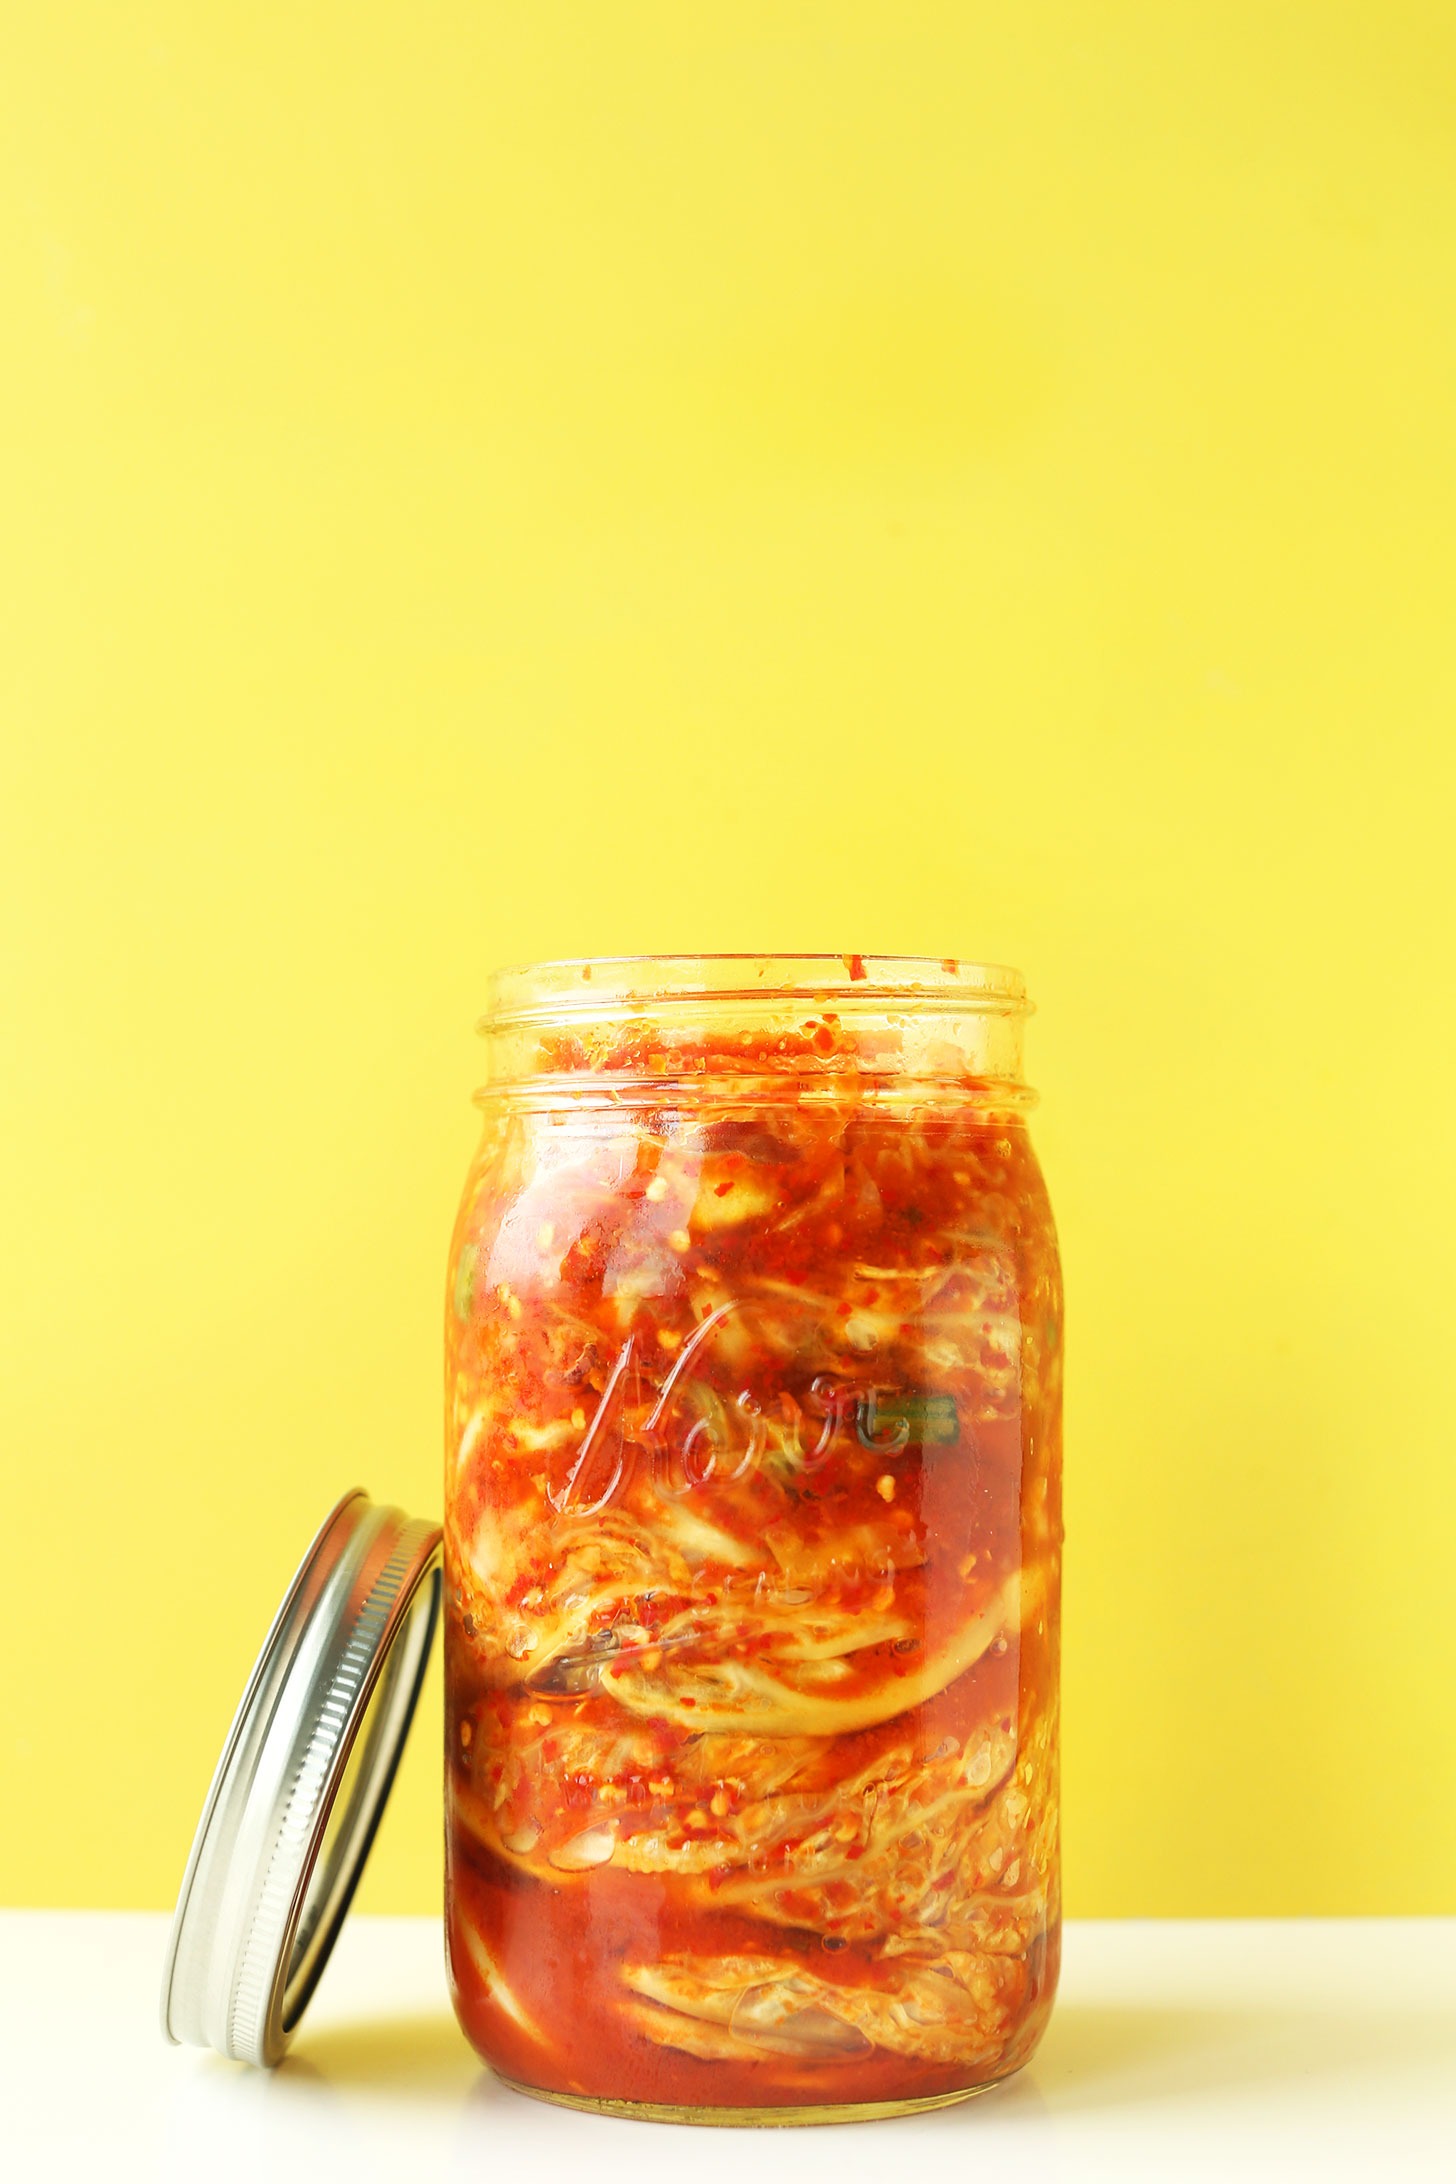 kimči